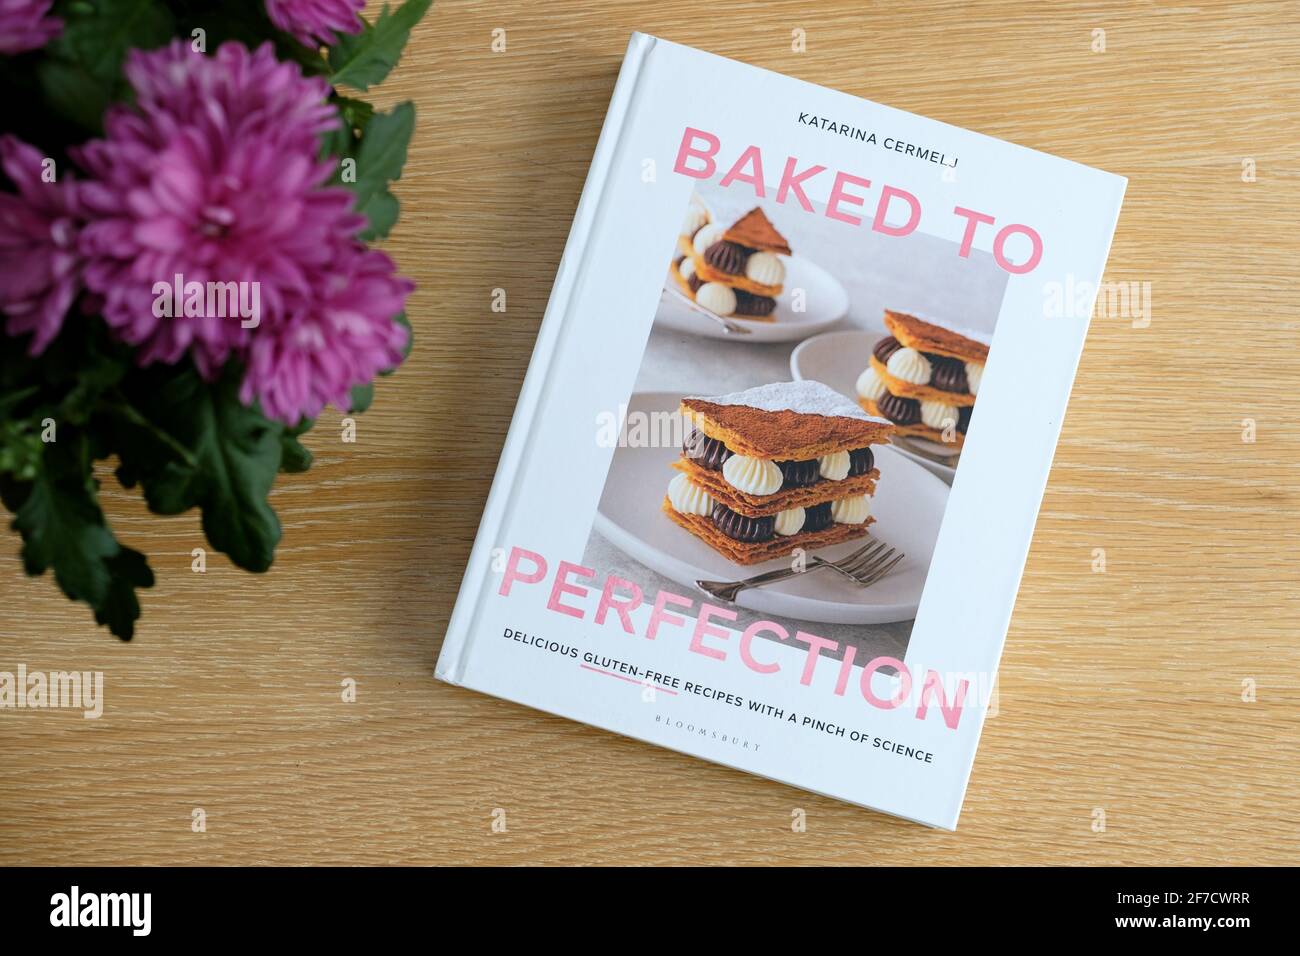 Perfekt gebacken, das Buch von Katarina Cermelj. Die Kuchen und Backrezepte sind alle glutenfrei in diesem ausgezeichneten Buch Stockfoto